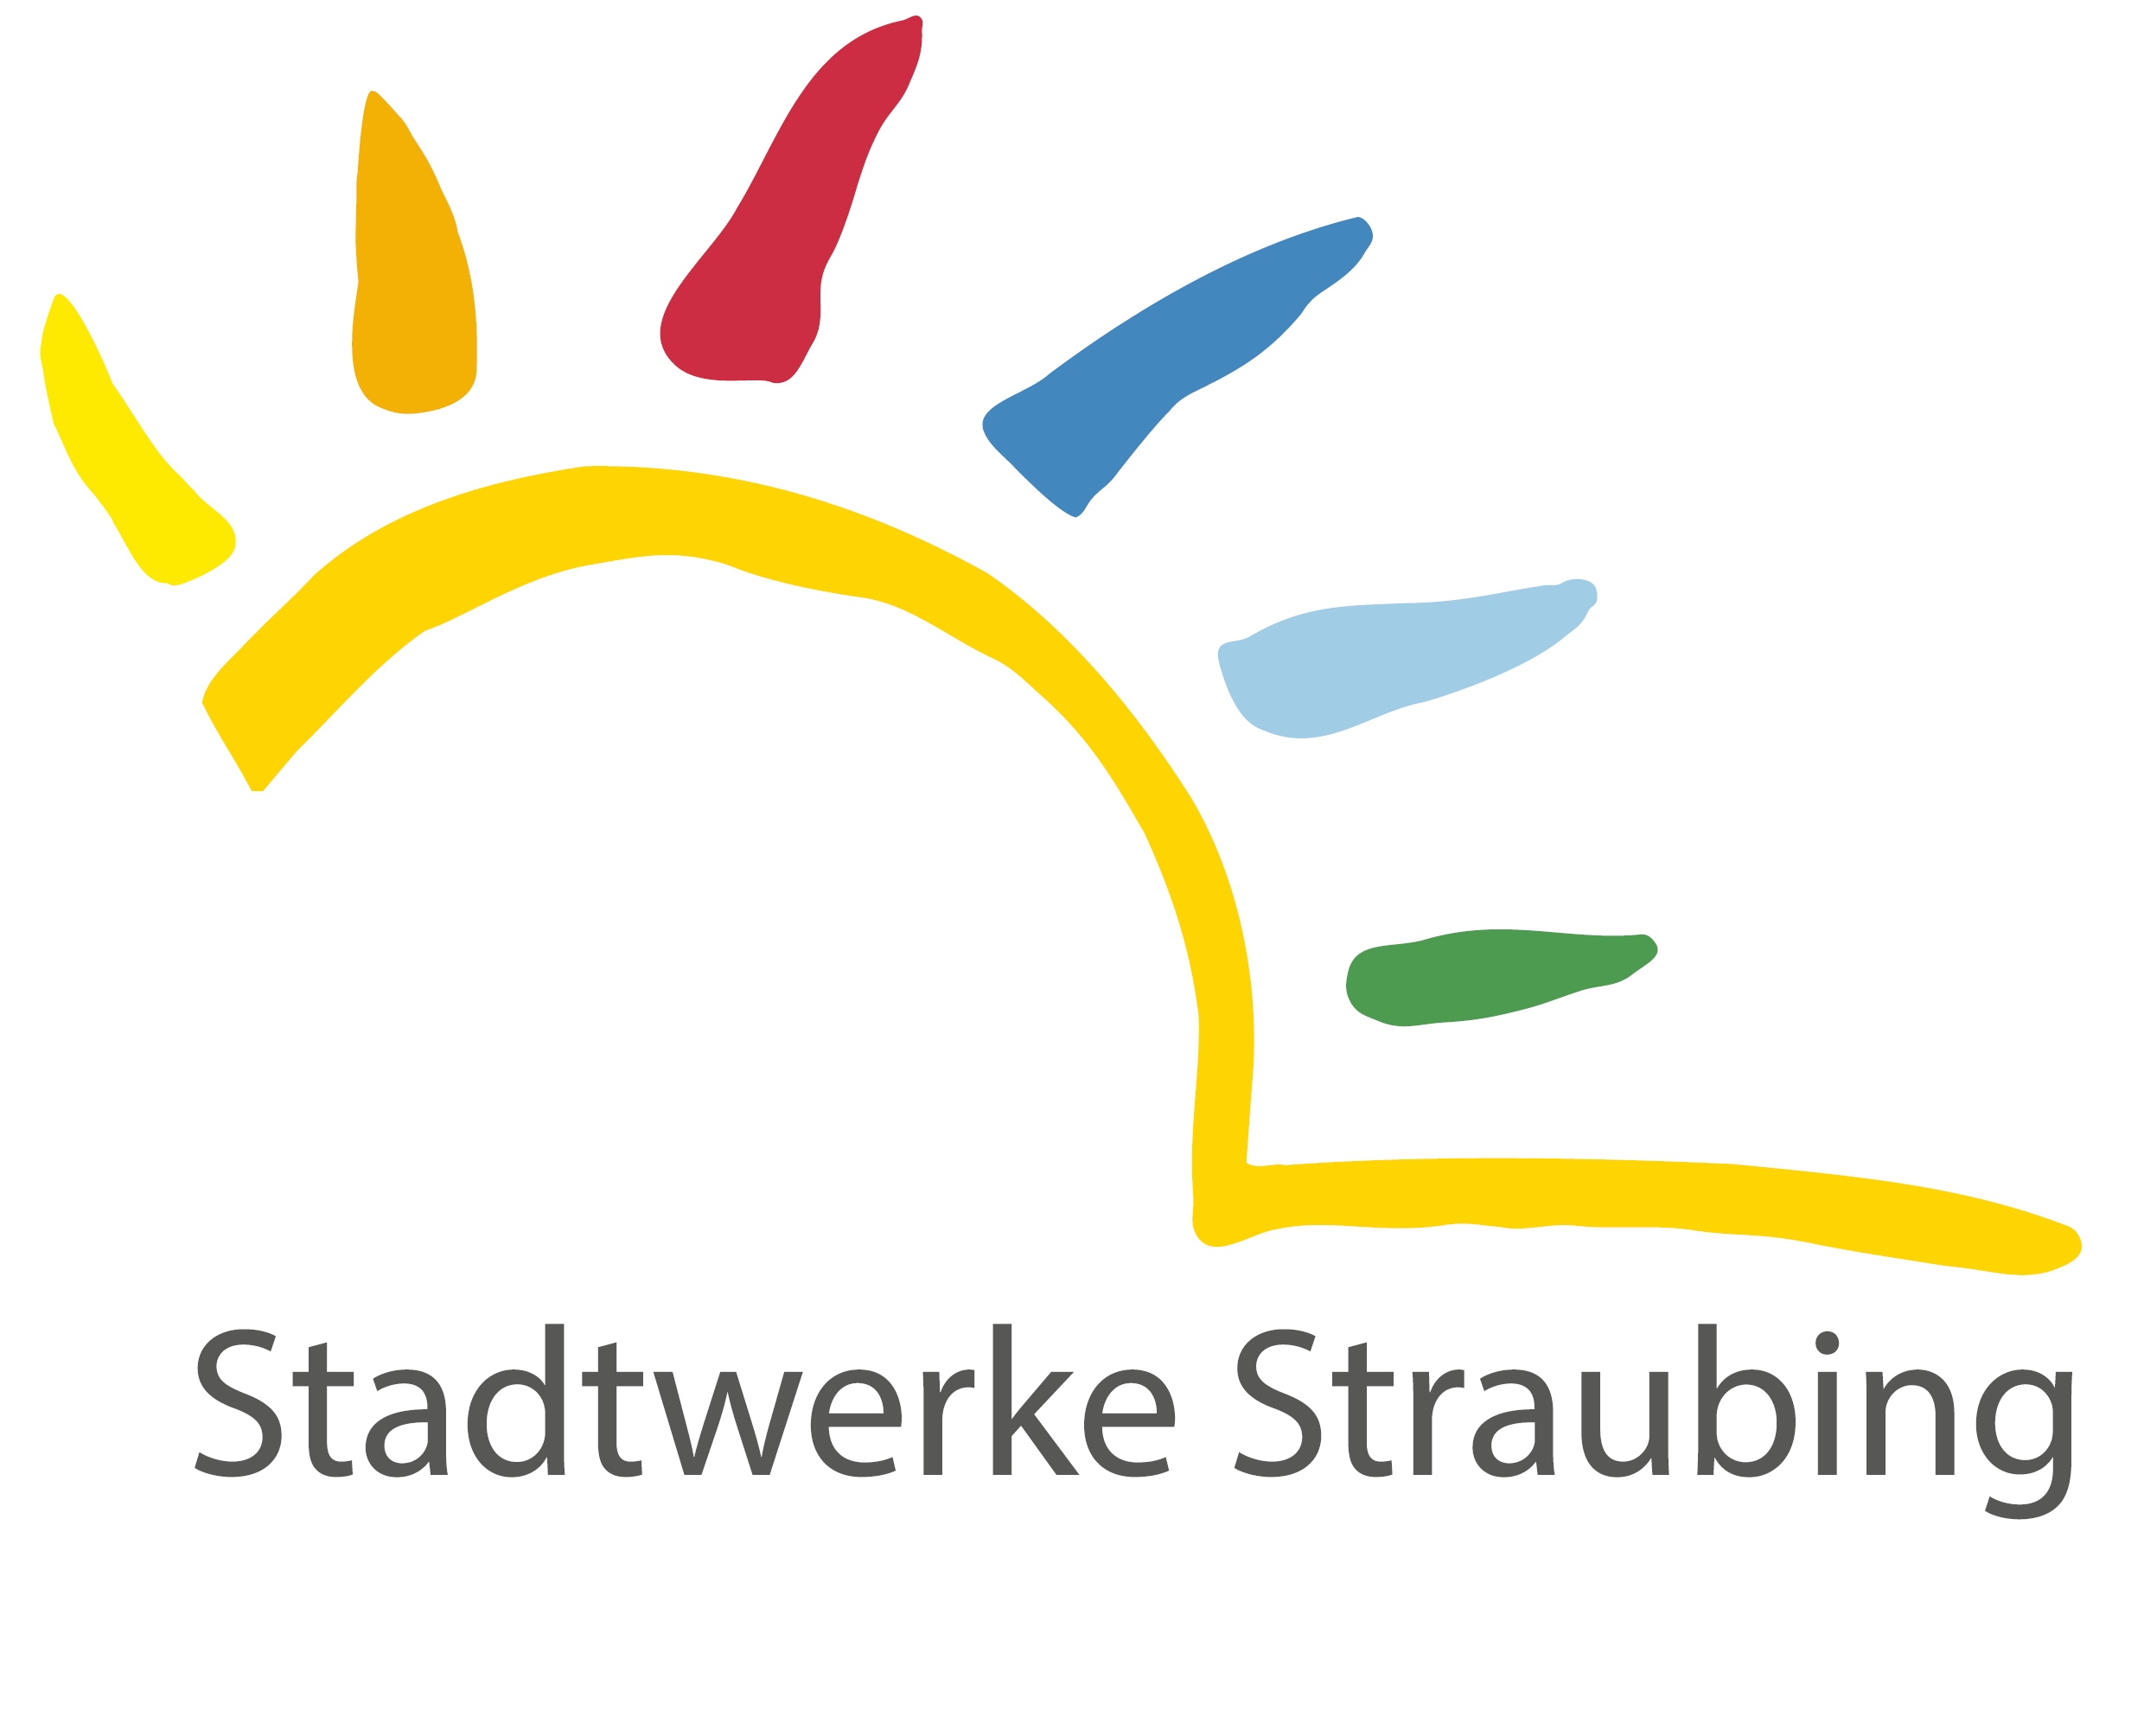 Stadtwerke Straubing